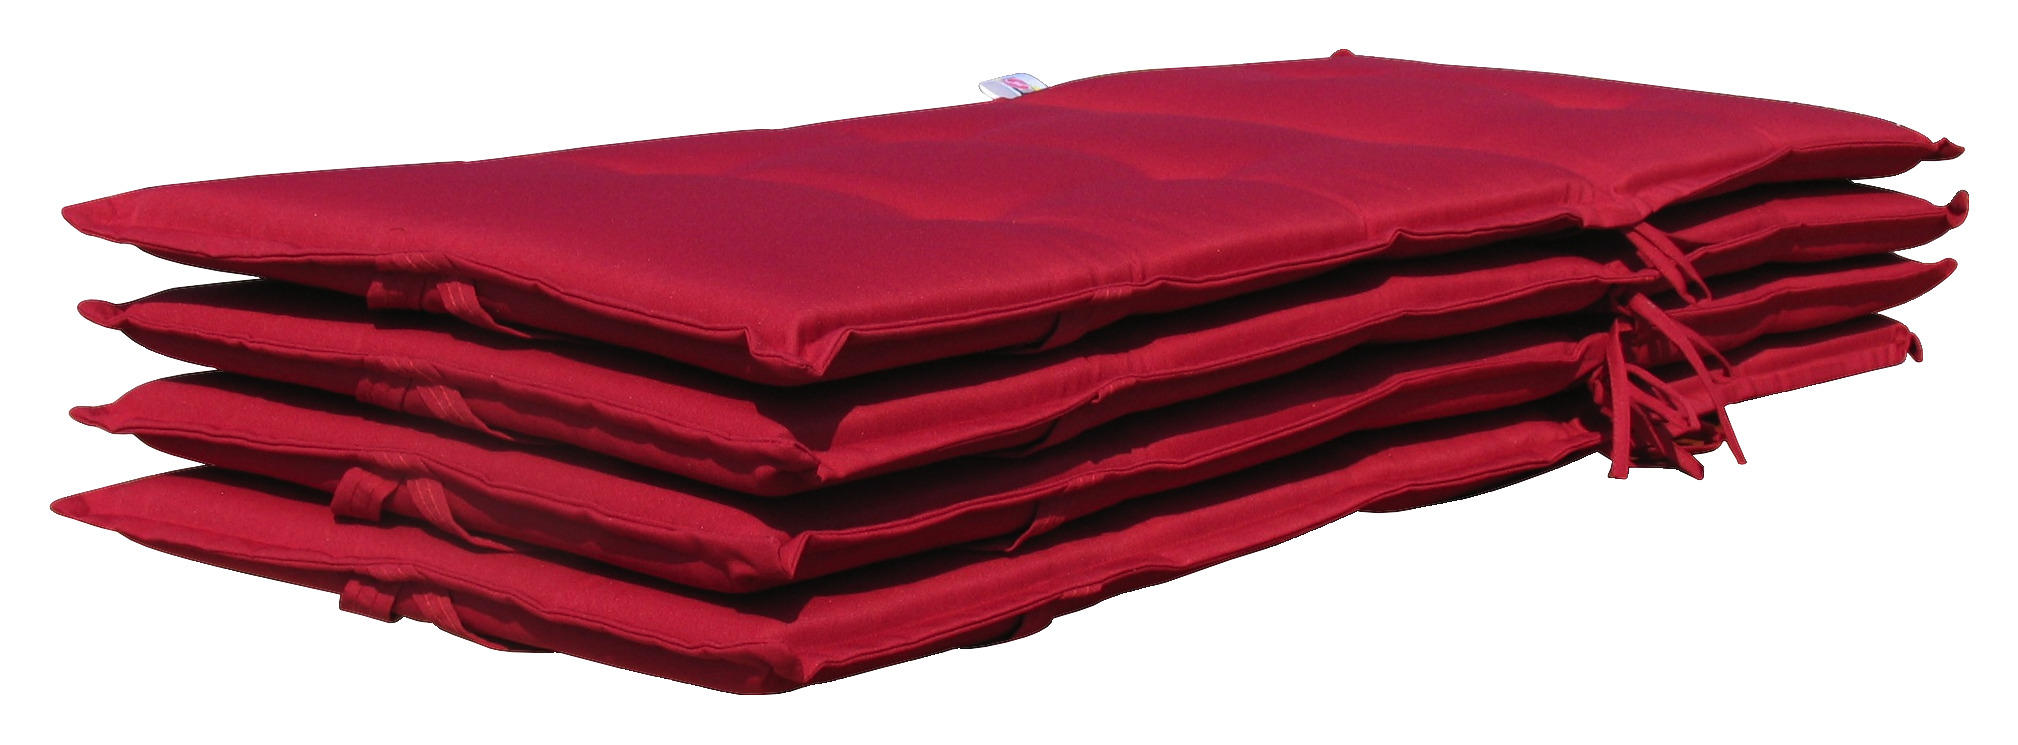 Grasekamp Auflage für Hochlehner rot Polyester-Mischgewebe B/H/L: ca. 53x7x121 cm Auflage_Hochlehner - rot (121,00/53,00/7,00cm)